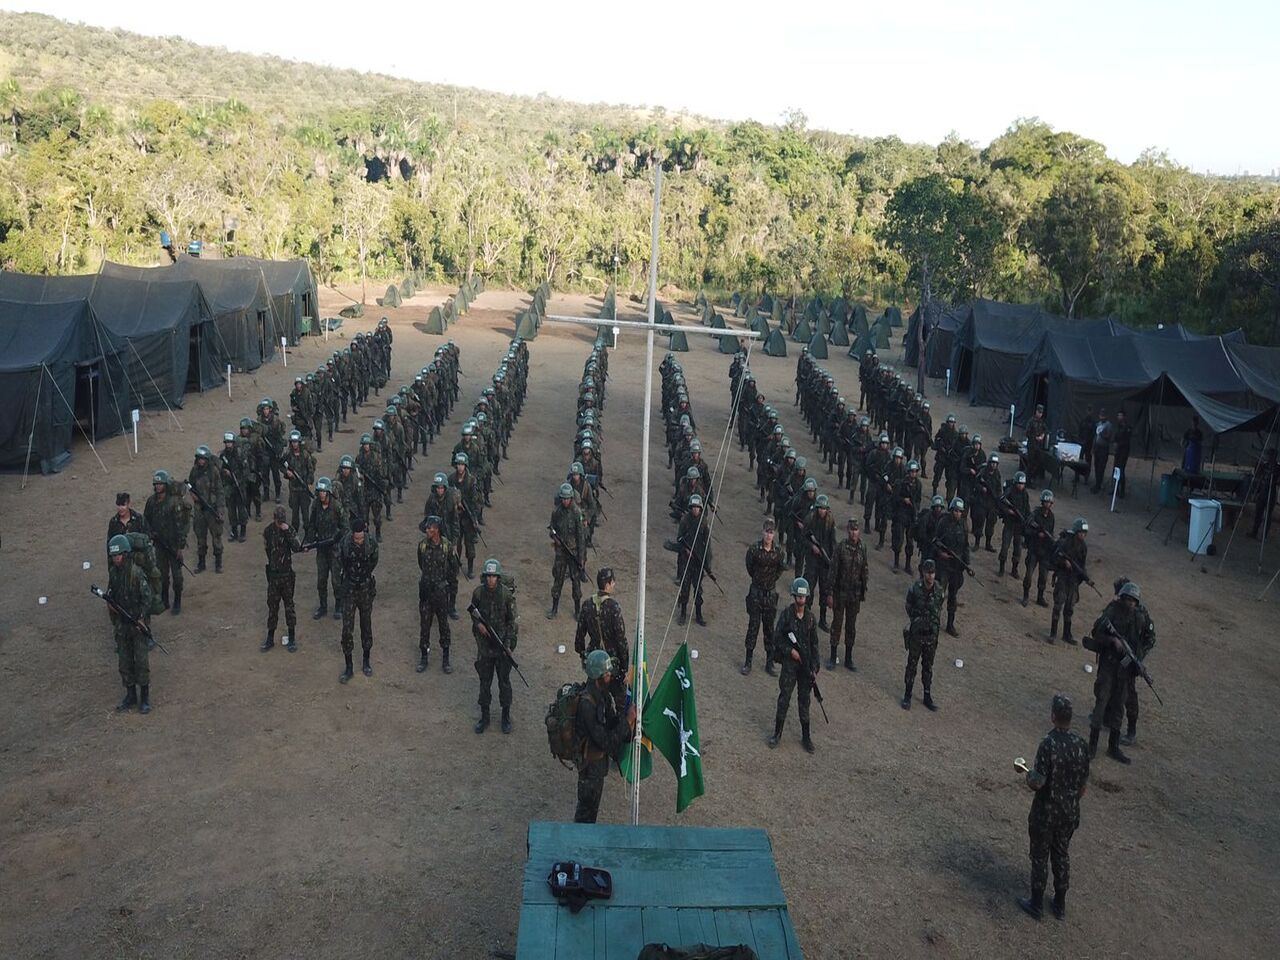 22º Batalhão de Infantaria realiza o primeiro acampamento de instrução dos soldados incorporados.